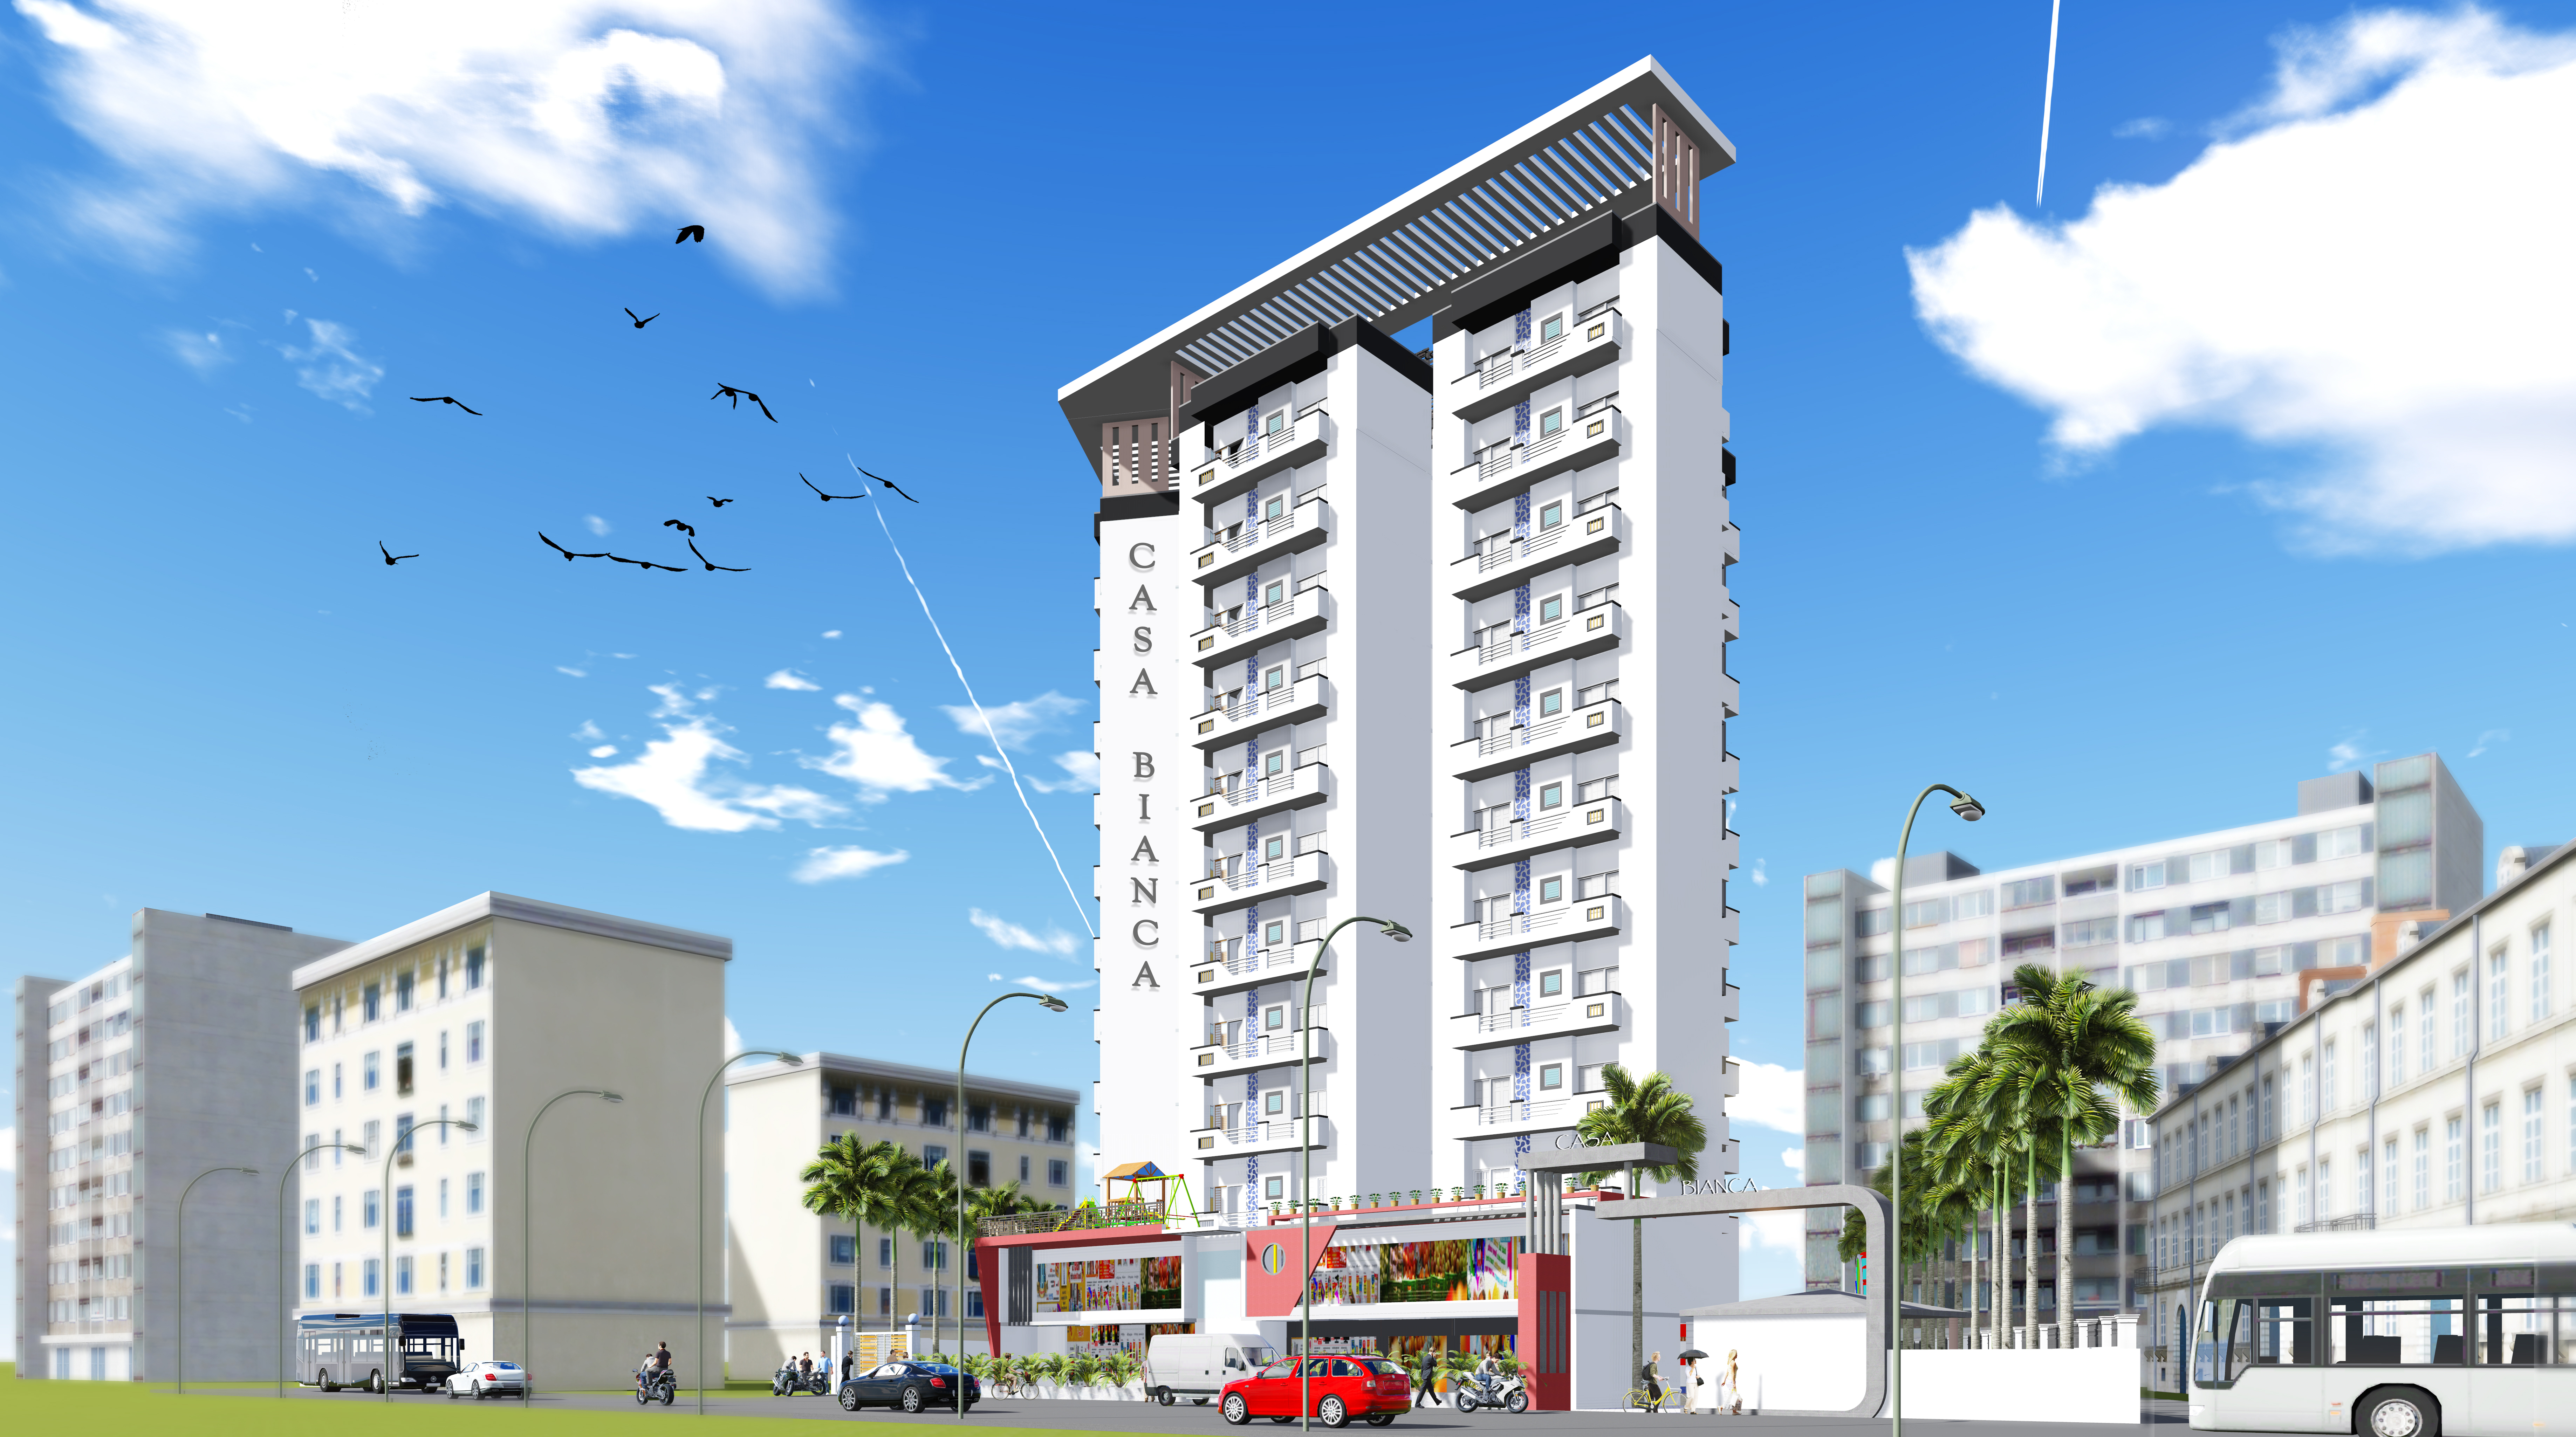 Proposed "Casa Bianca" multistorey apartment, Varanasi